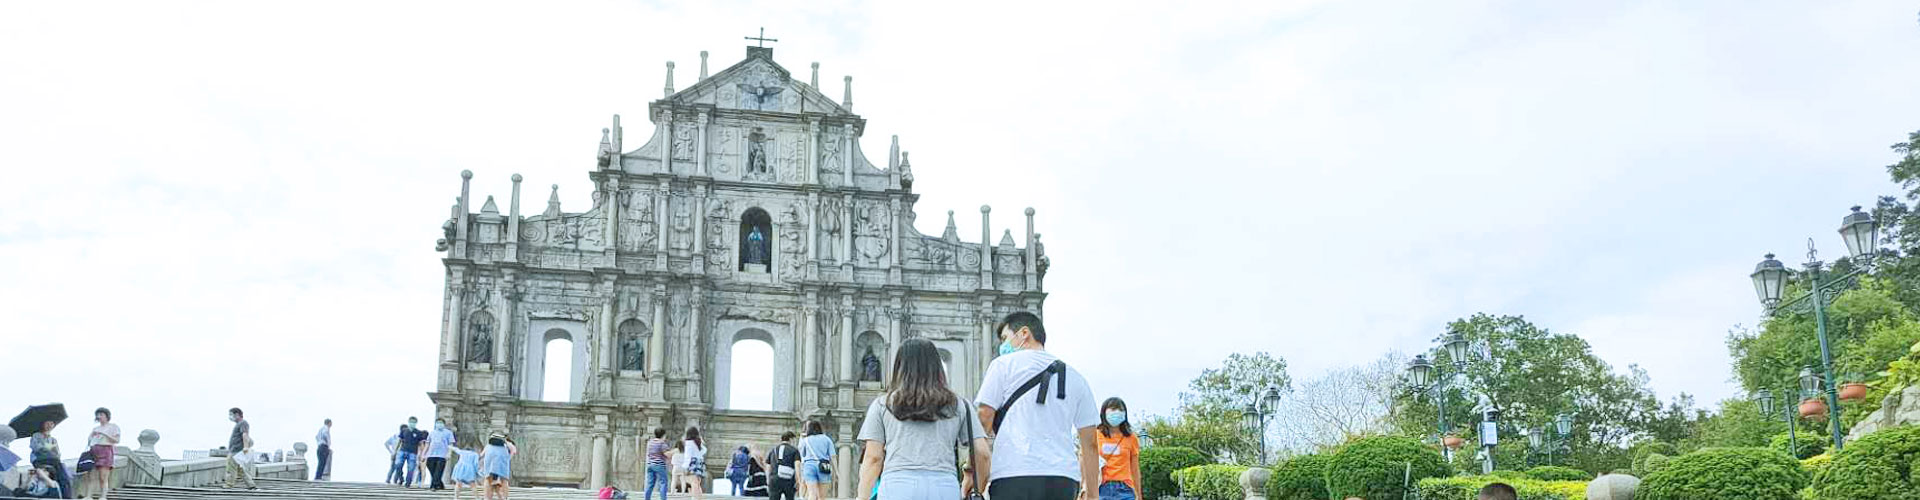 Ruines de la cathédrale Saint-Paul à Macao